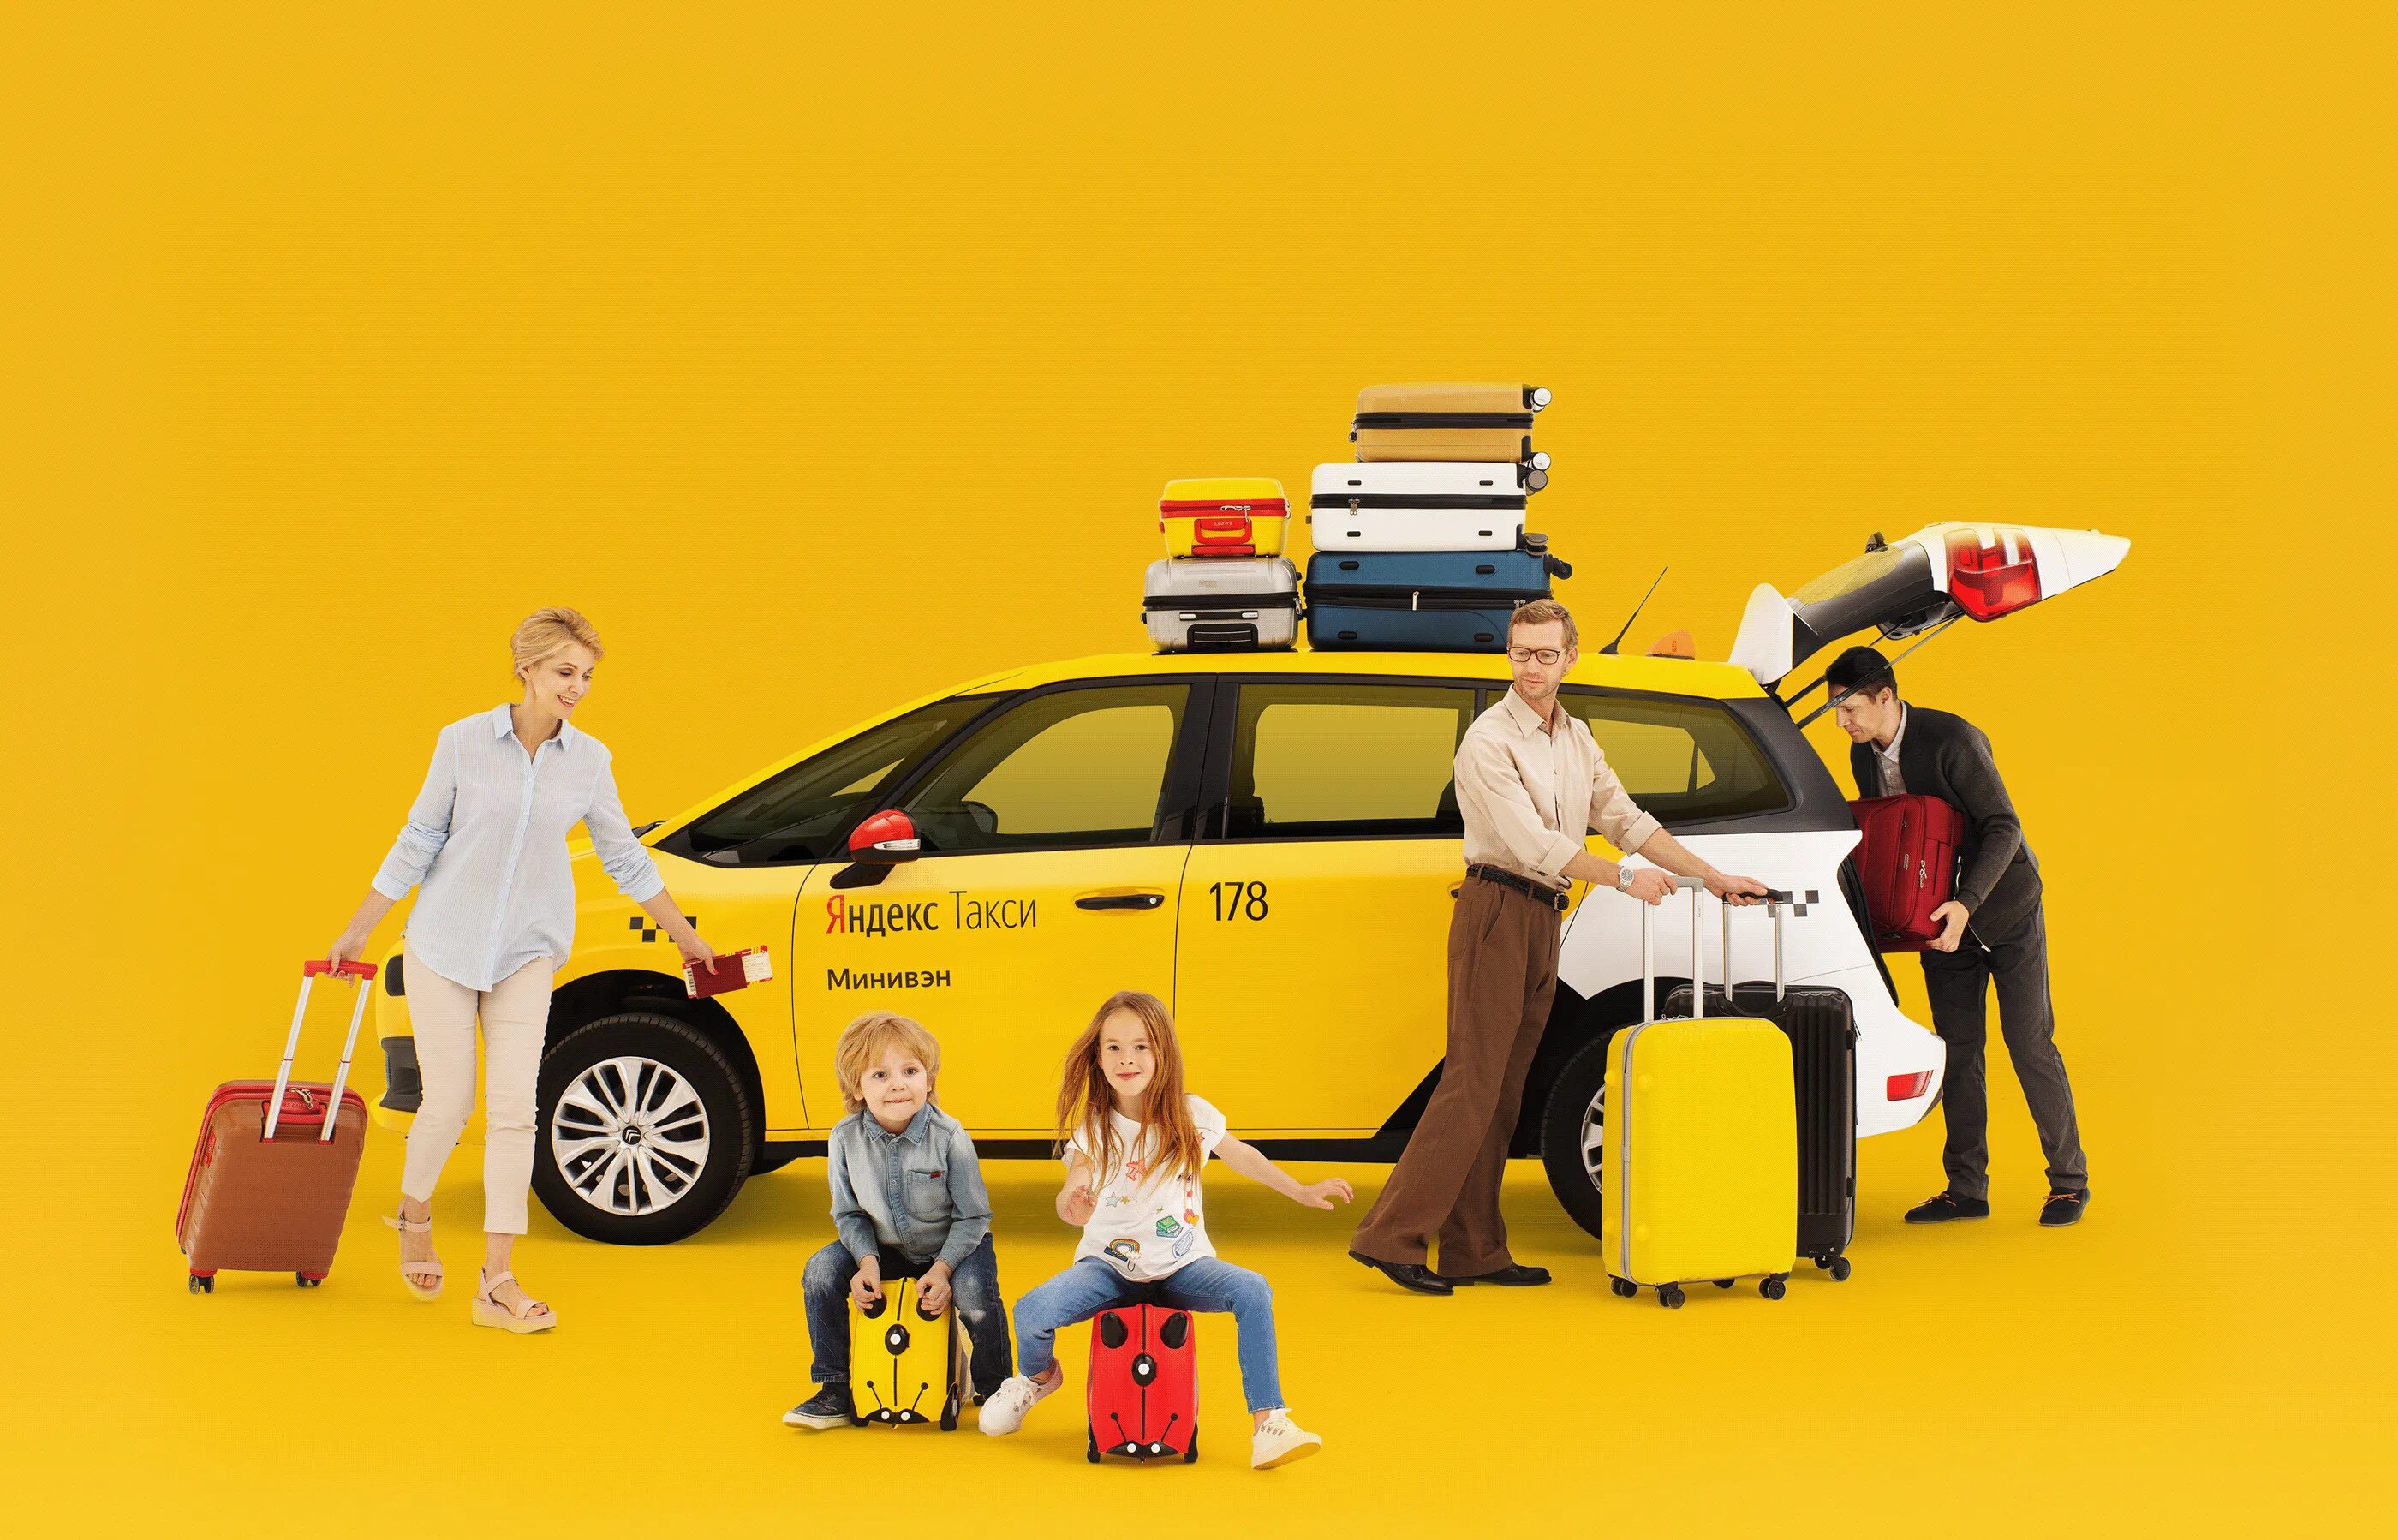 Реклама такси. Креативная реклама такси. Такси картинки. Вызвать такси гоу